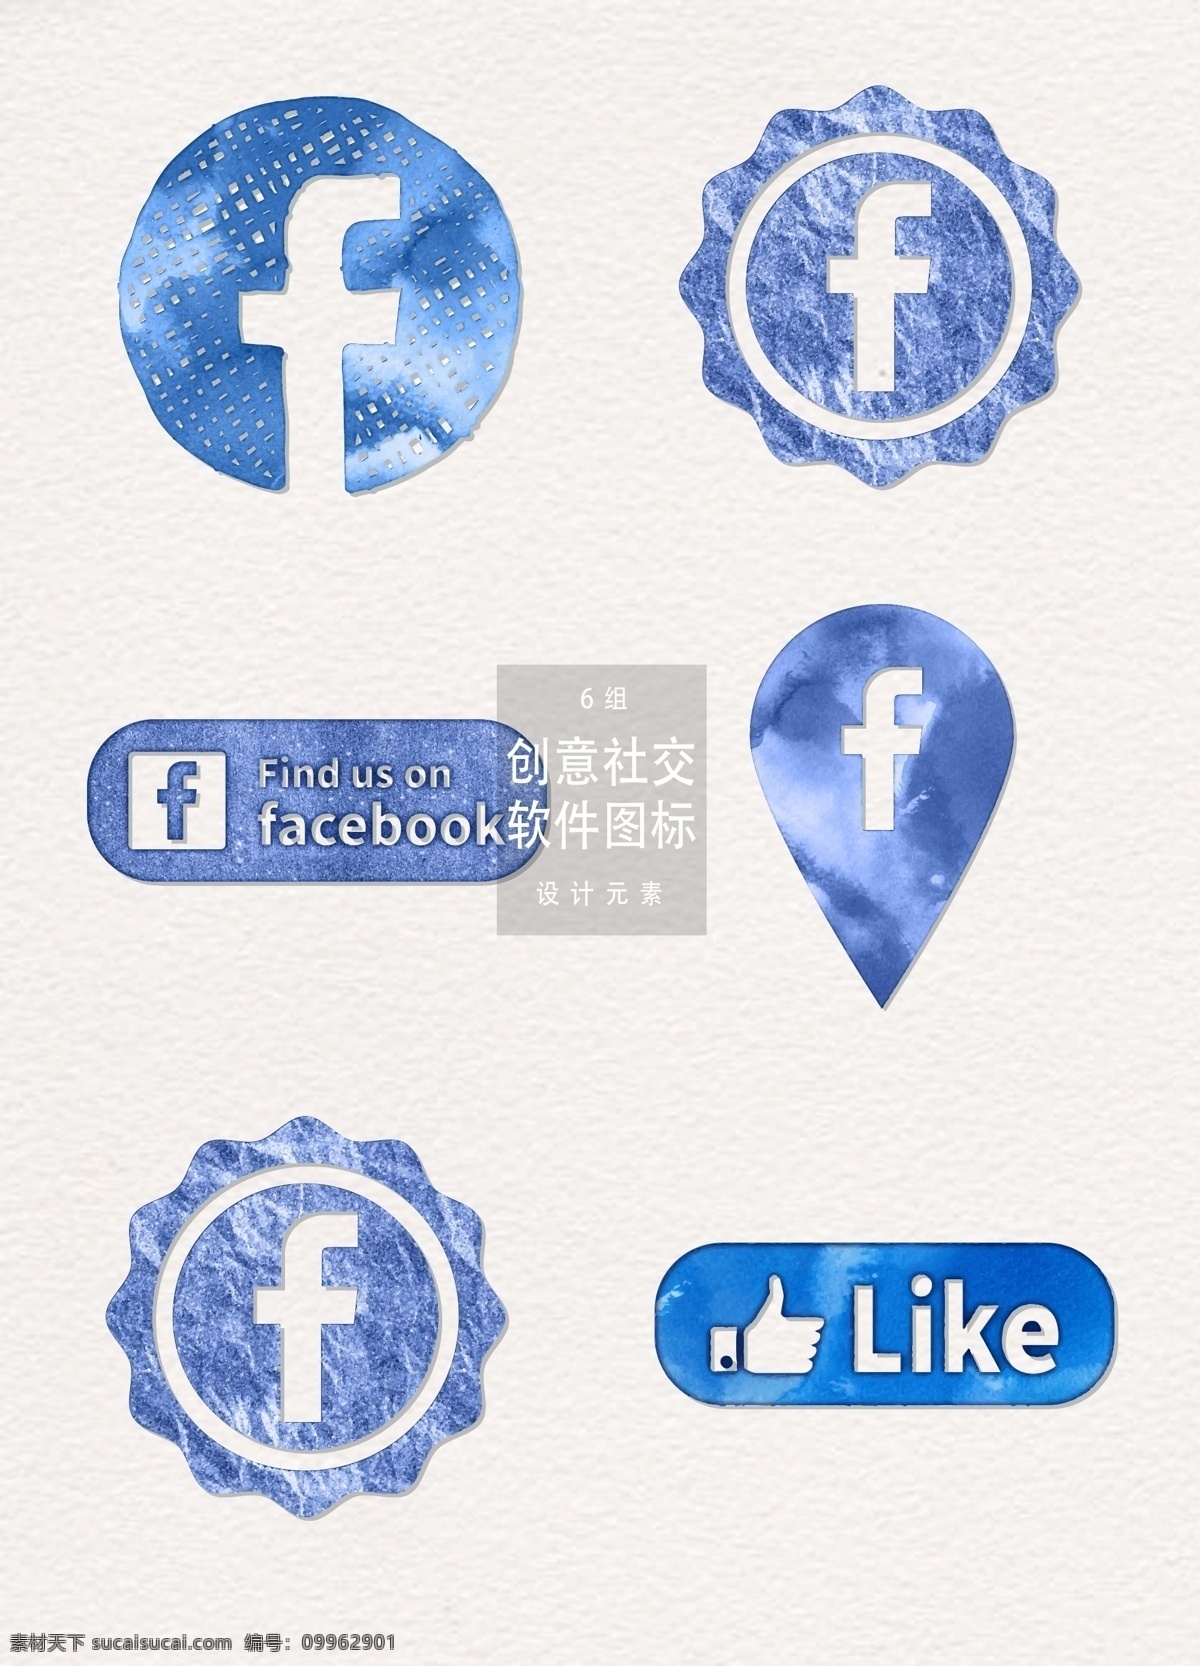 蓝色 水彩 社交 软件 图标 软件图标 图标设计 app图标 社交软件图标 社交软件 水彩图标 手绘图标 矢量水彩 蓝色图标